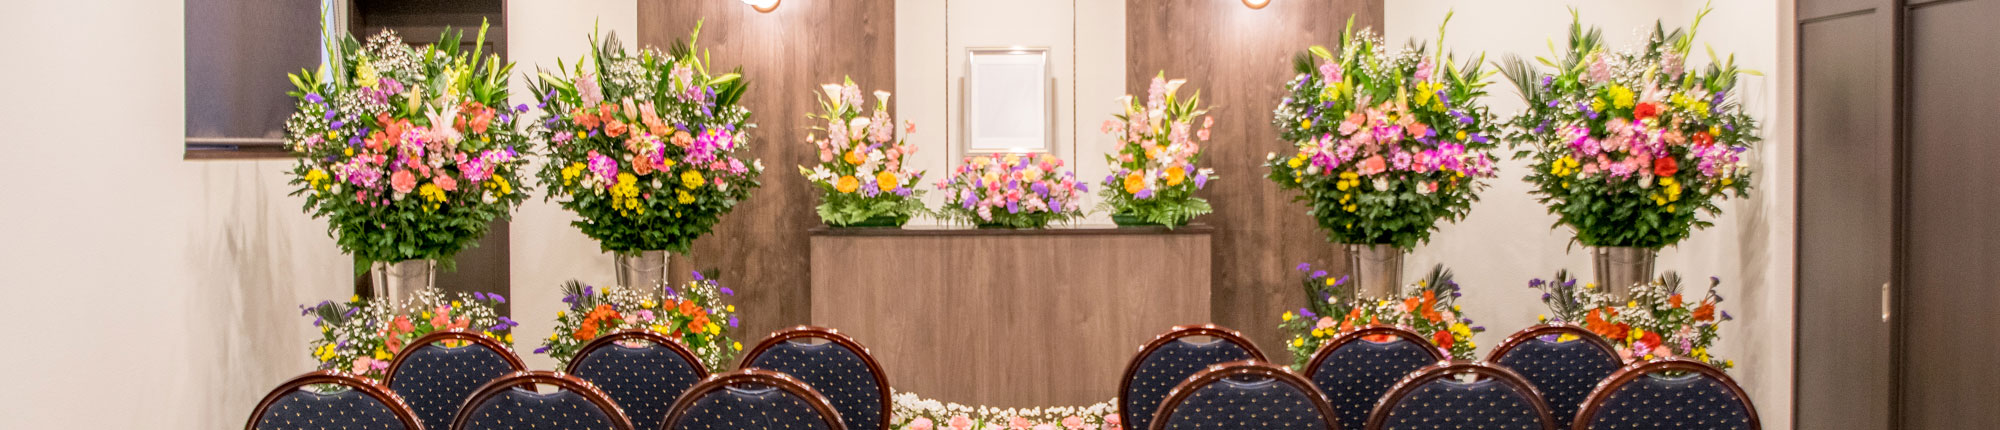 小さなお葬式をお考えの方へ新潟県長岡市の家族葬専門式場「あんしん館」